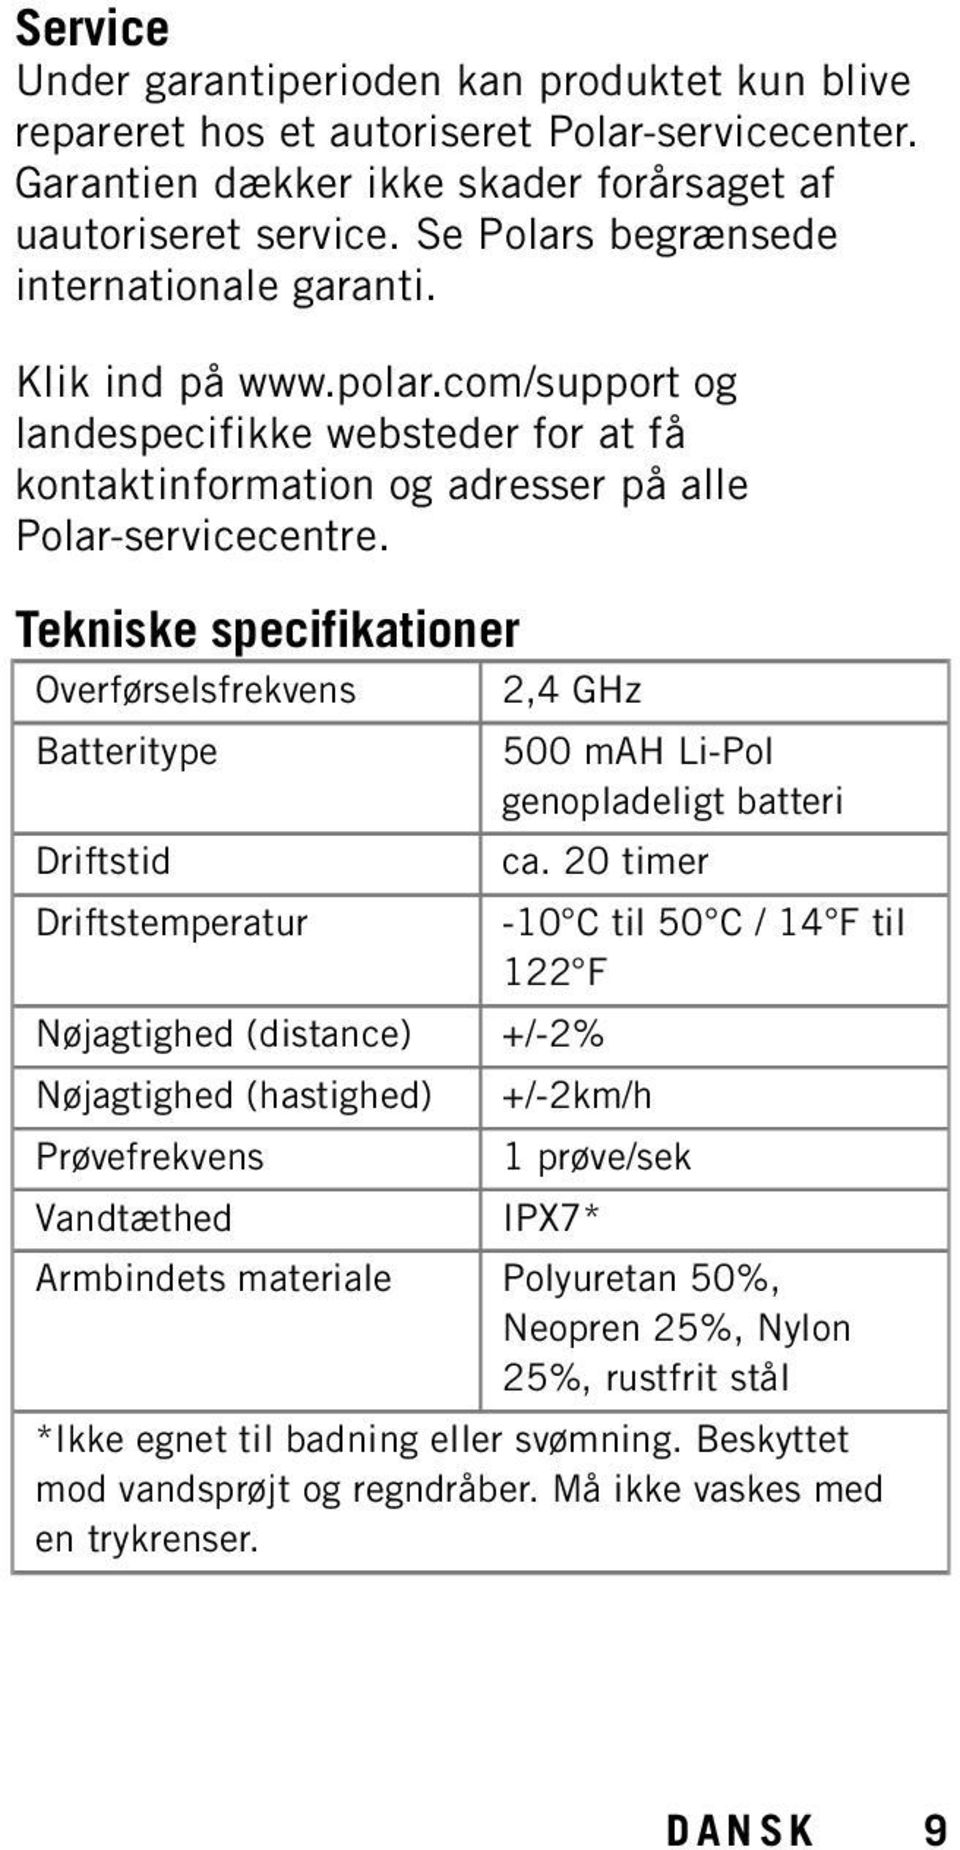 Tekniske specifikationer Overførselsfrekvens 2,4 GHz Batteritype Driftstid Driftstemperatur Nøjagtighed (distance) +/-2% Nøjagtighed (hastighed) Prøvefrekvens Vandtæthed 500 mah Li-Pol genopladeligt